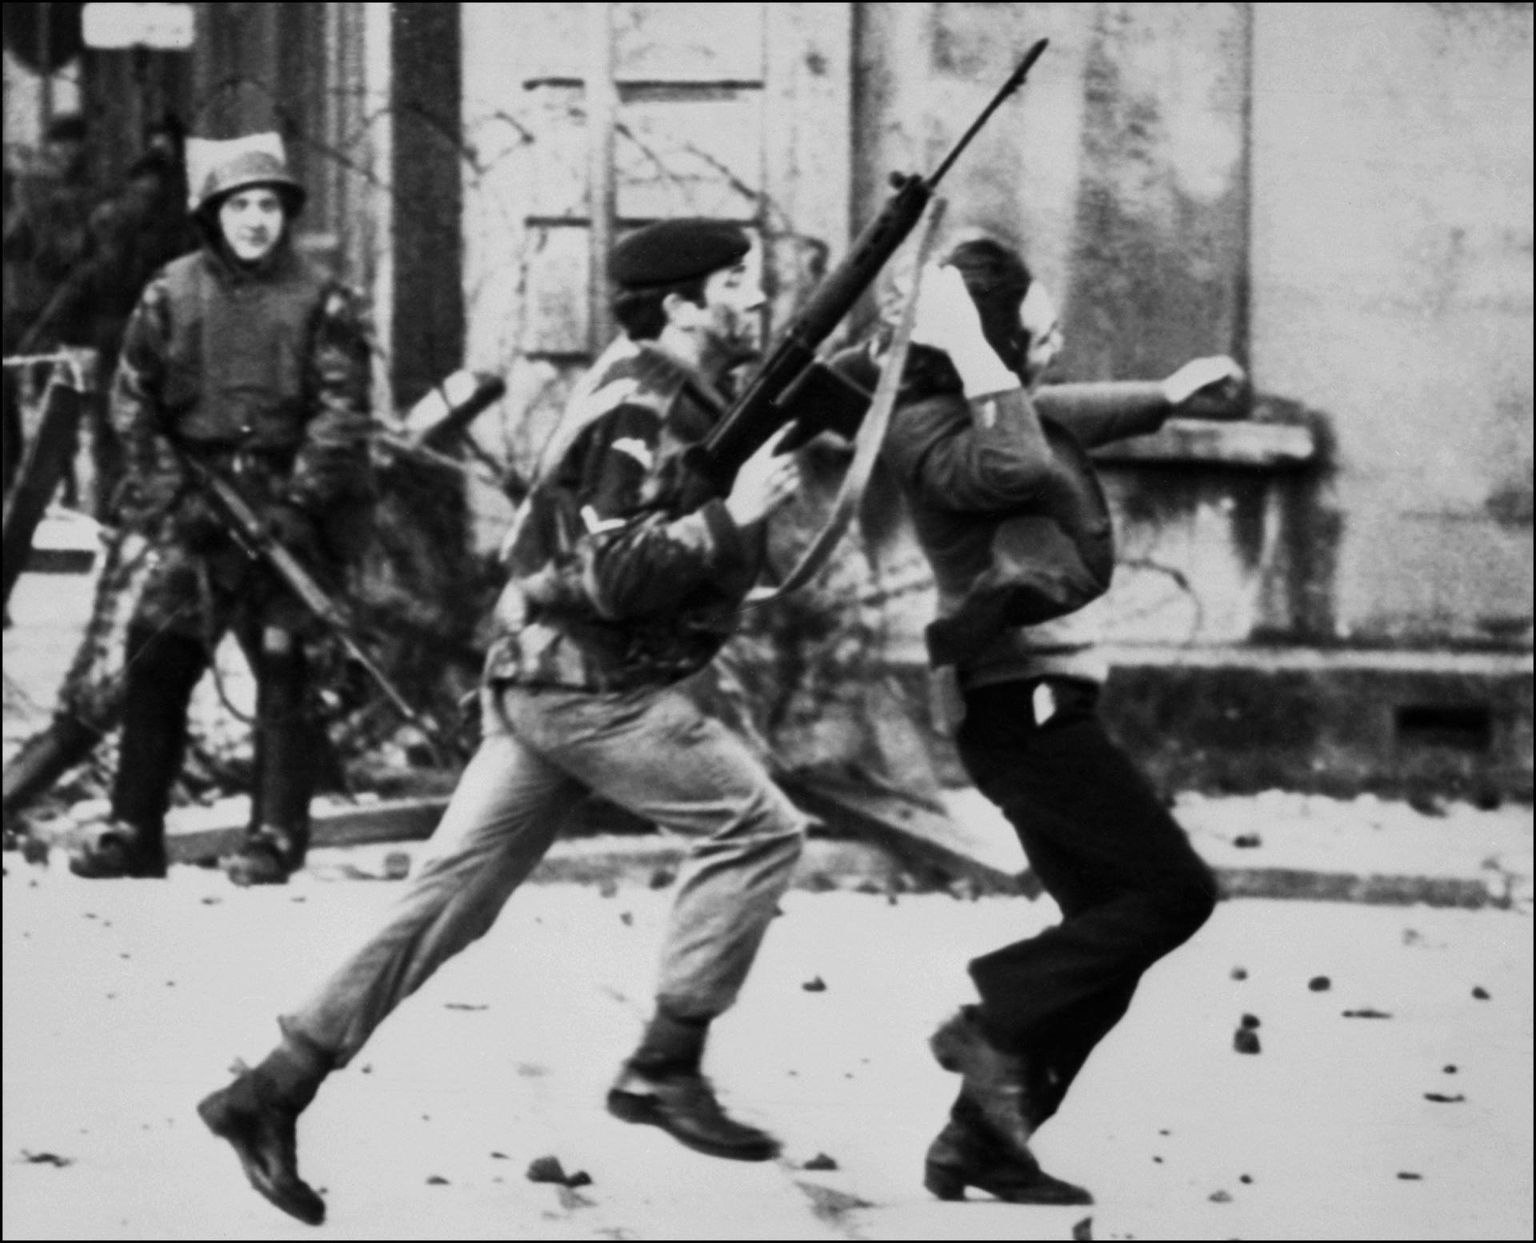 Briti sõdur 1972. aasta 30. jaanuaril Derrys meeleavaldajat lohistamas. Hiljem sai see sündmus tuntuks verise pühapäevana. 